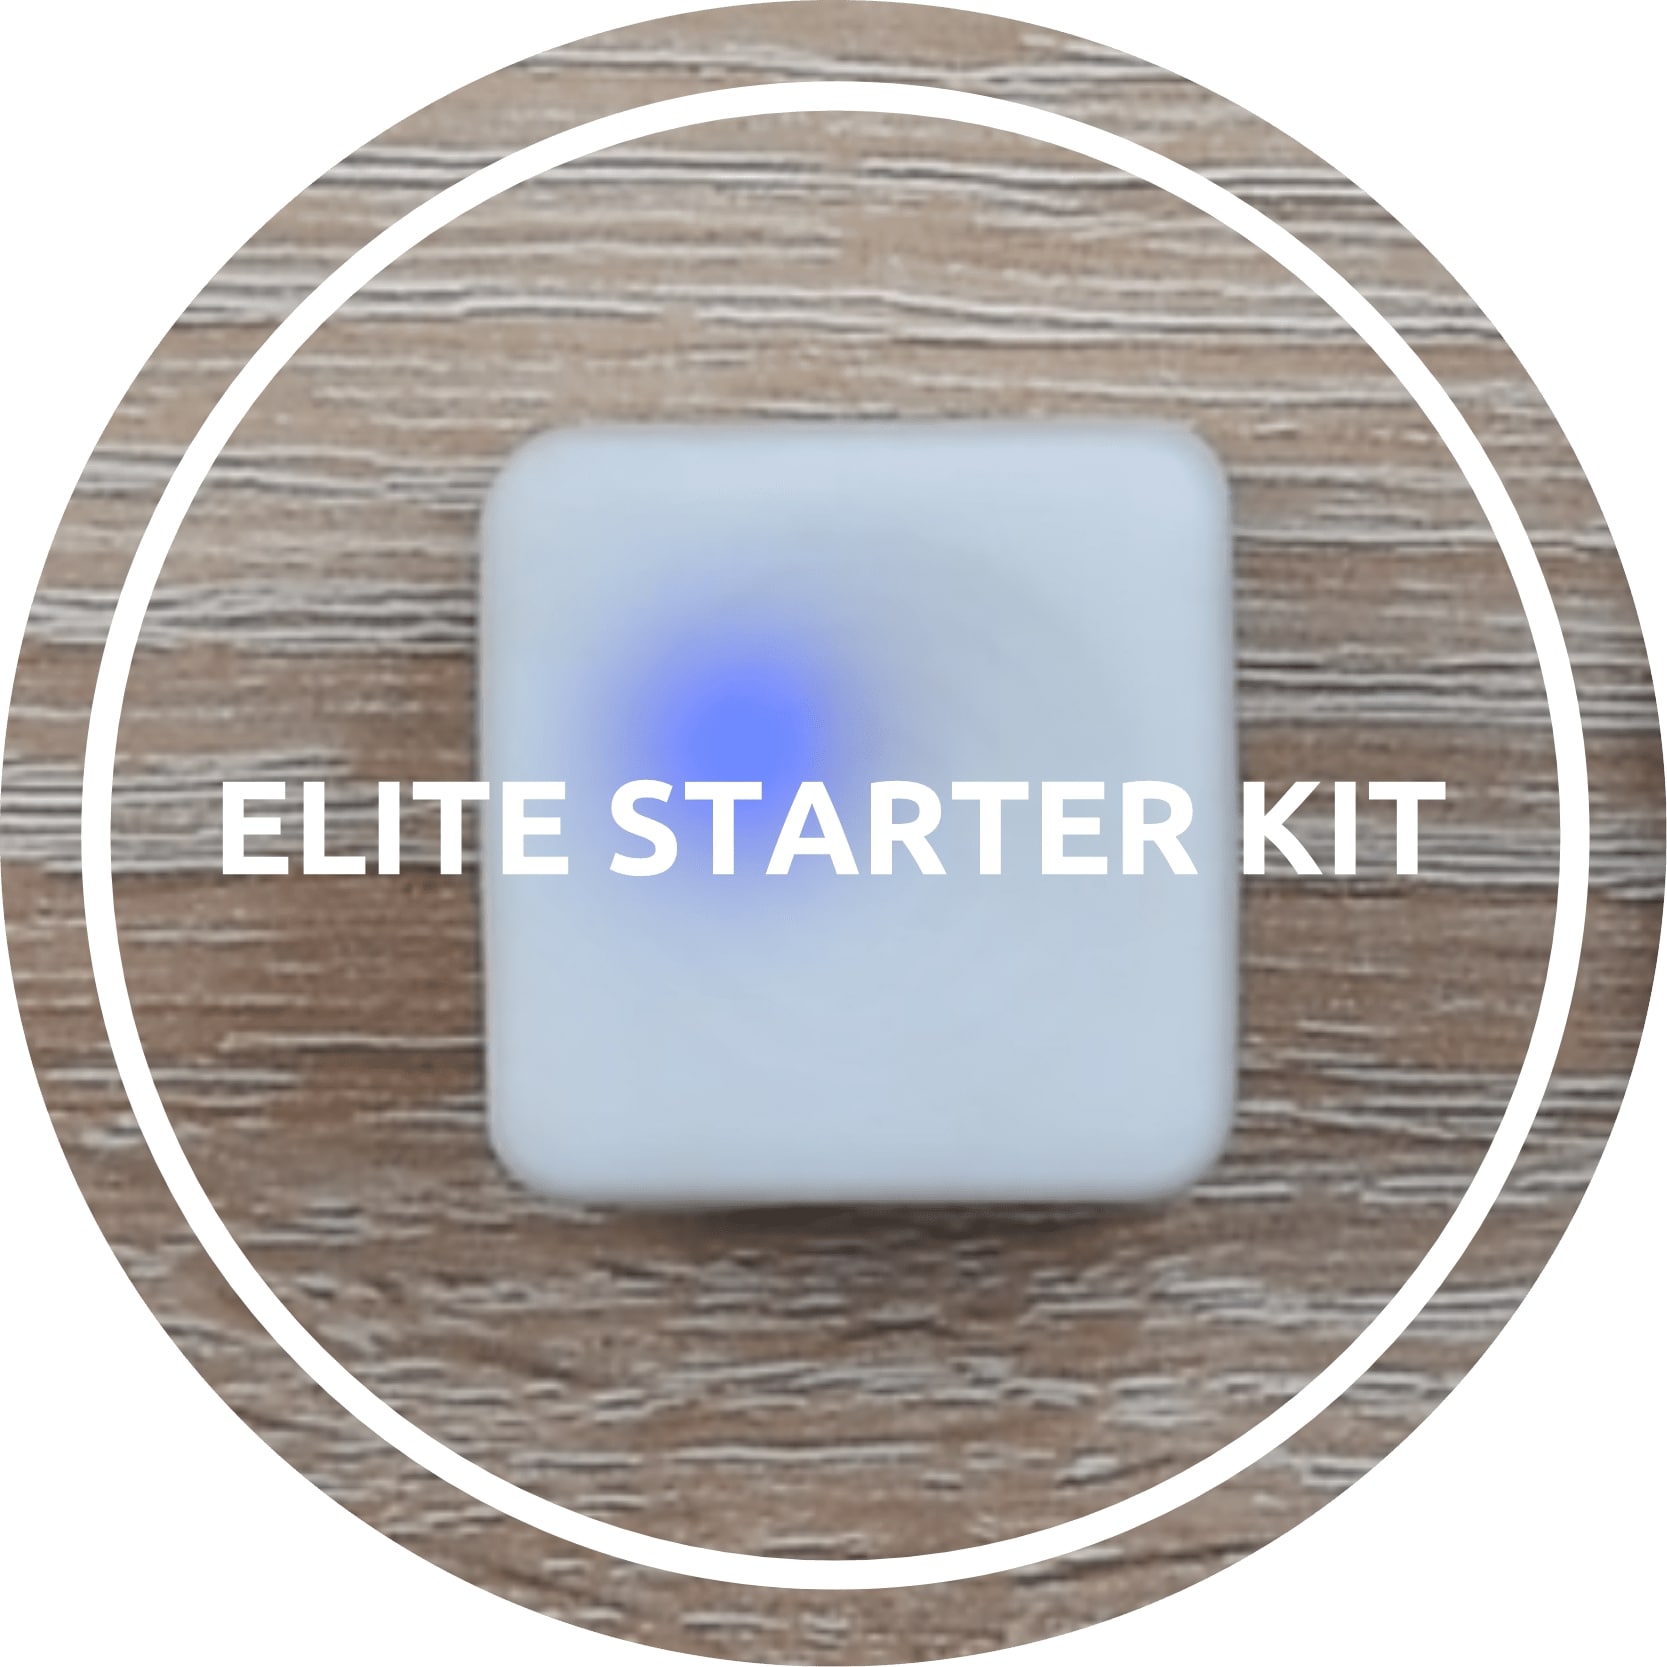 Elite Starter Kit